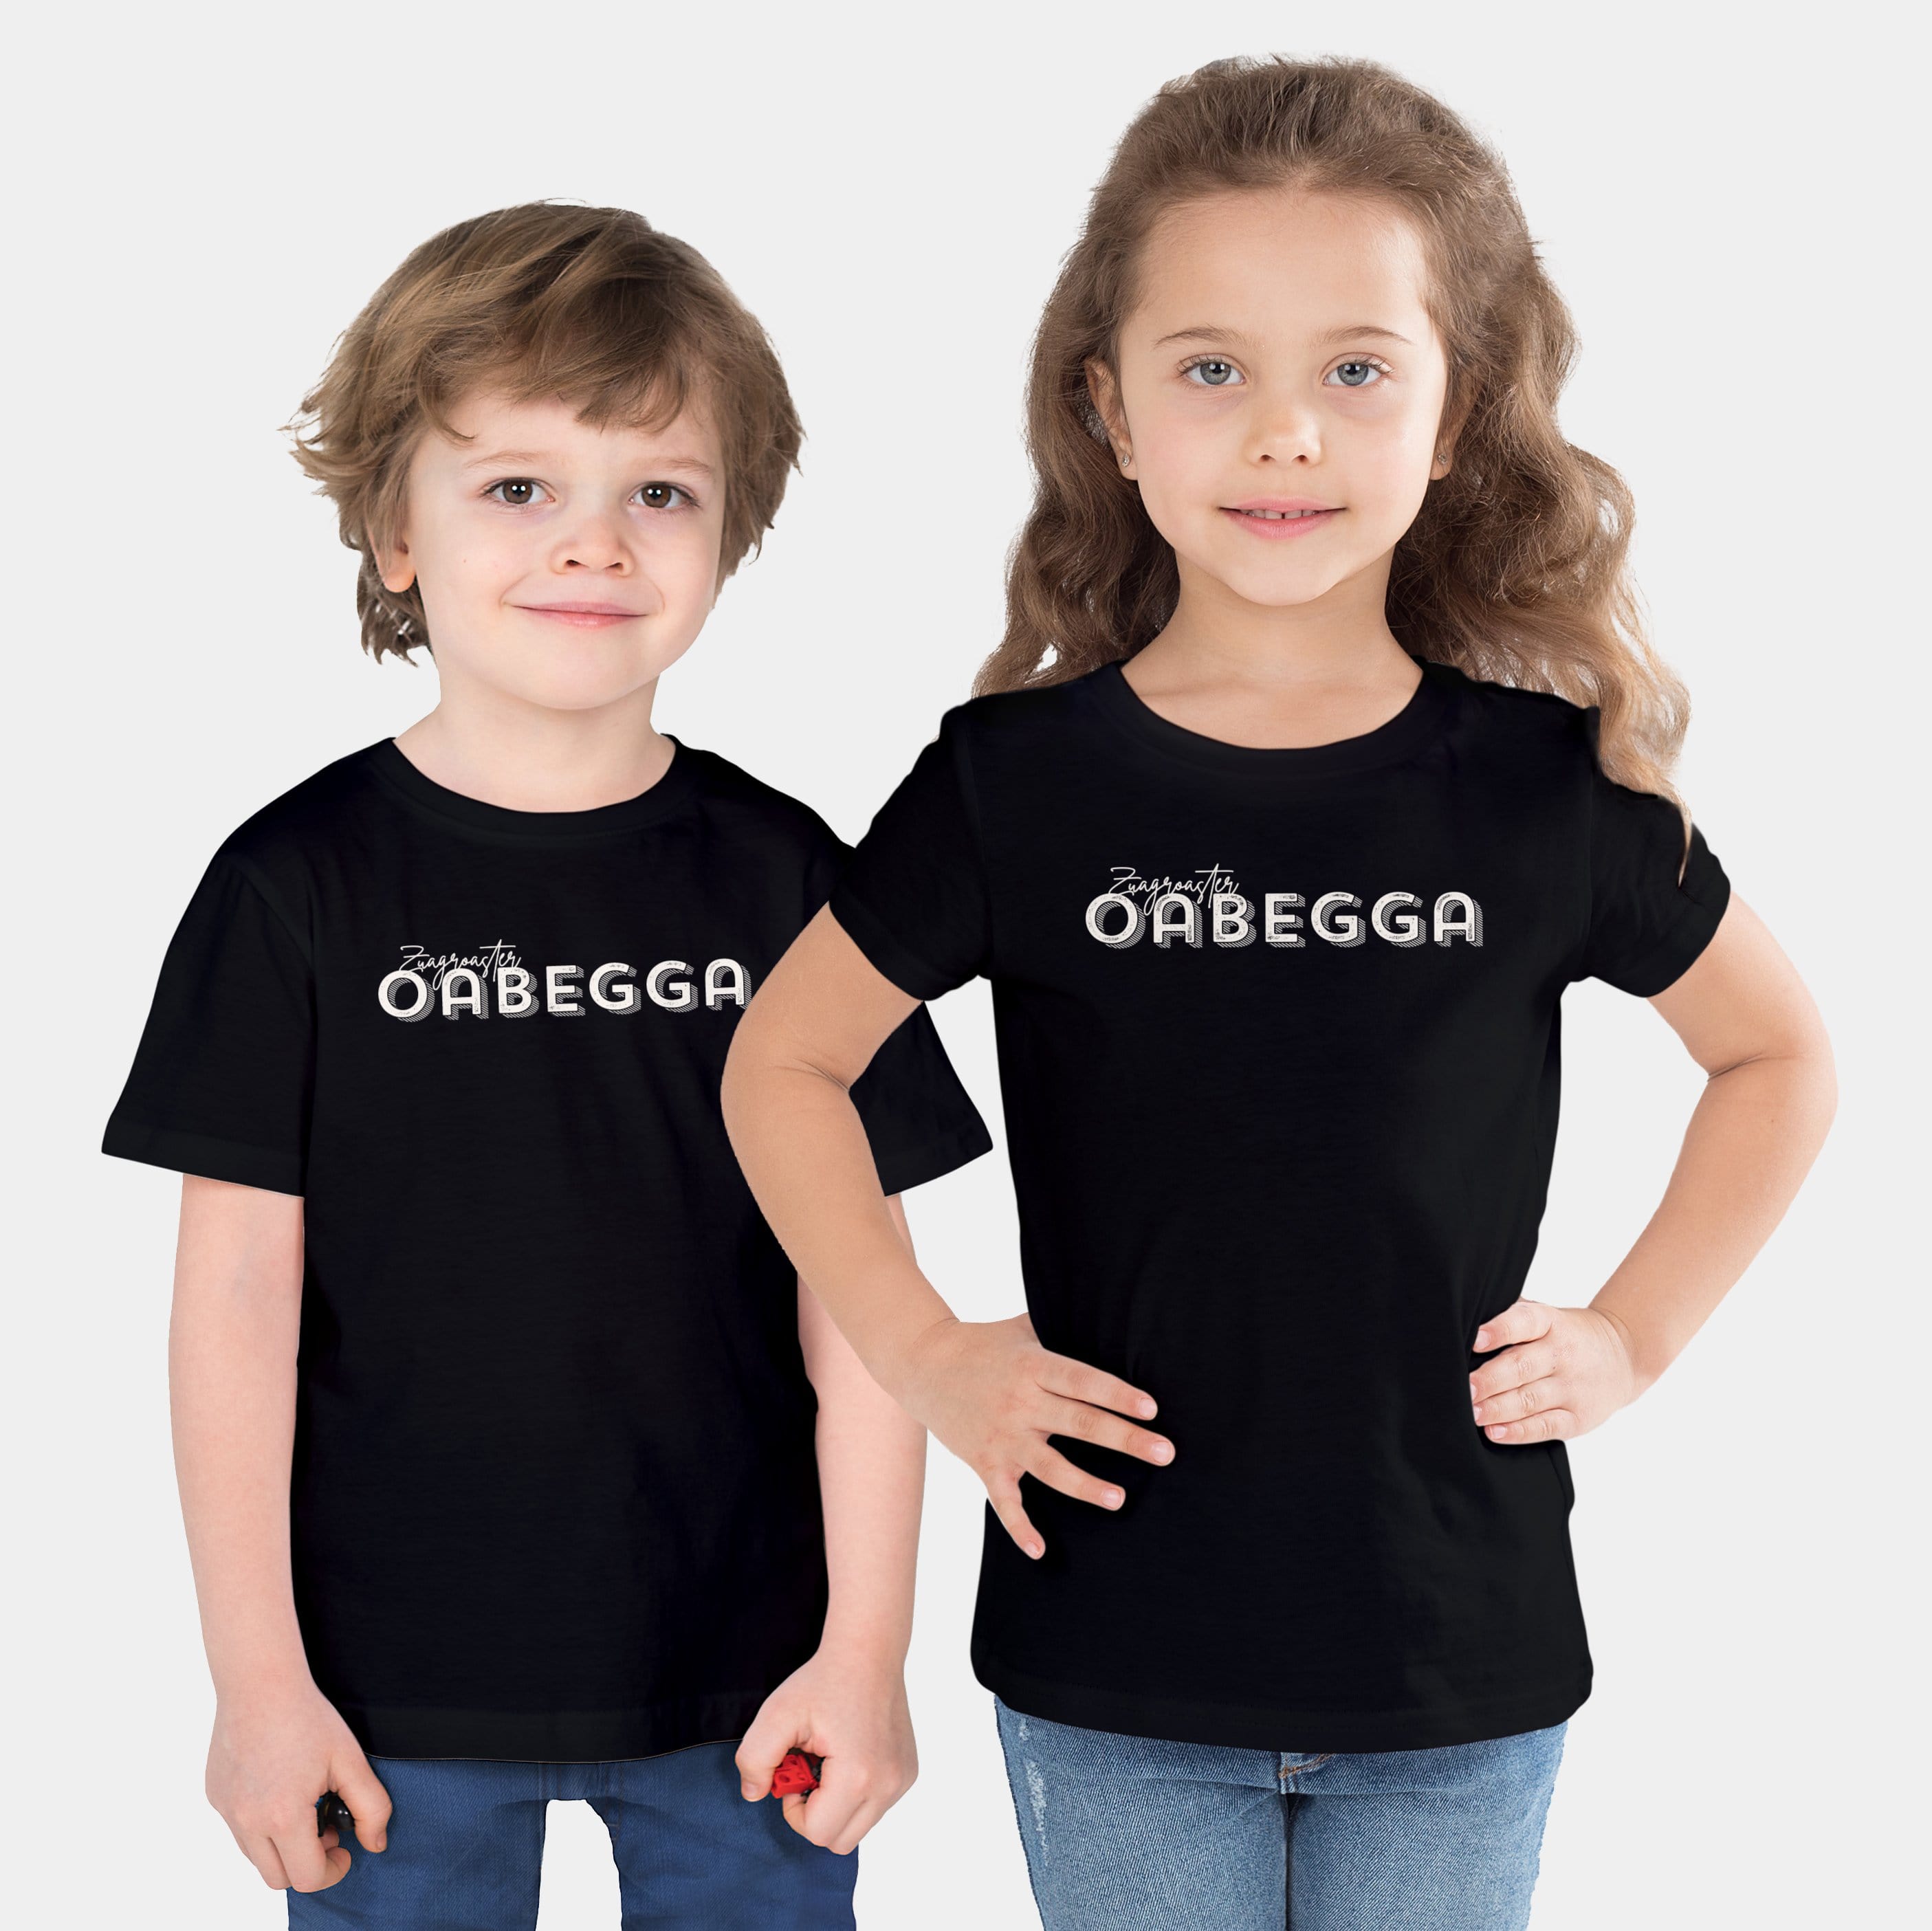 HEITER & LÄSSIG Kinder-T-Shirt "Zuagroaster Oabegga" 92/98 / schwarz - aus nachhaltiger und fairer Produktion